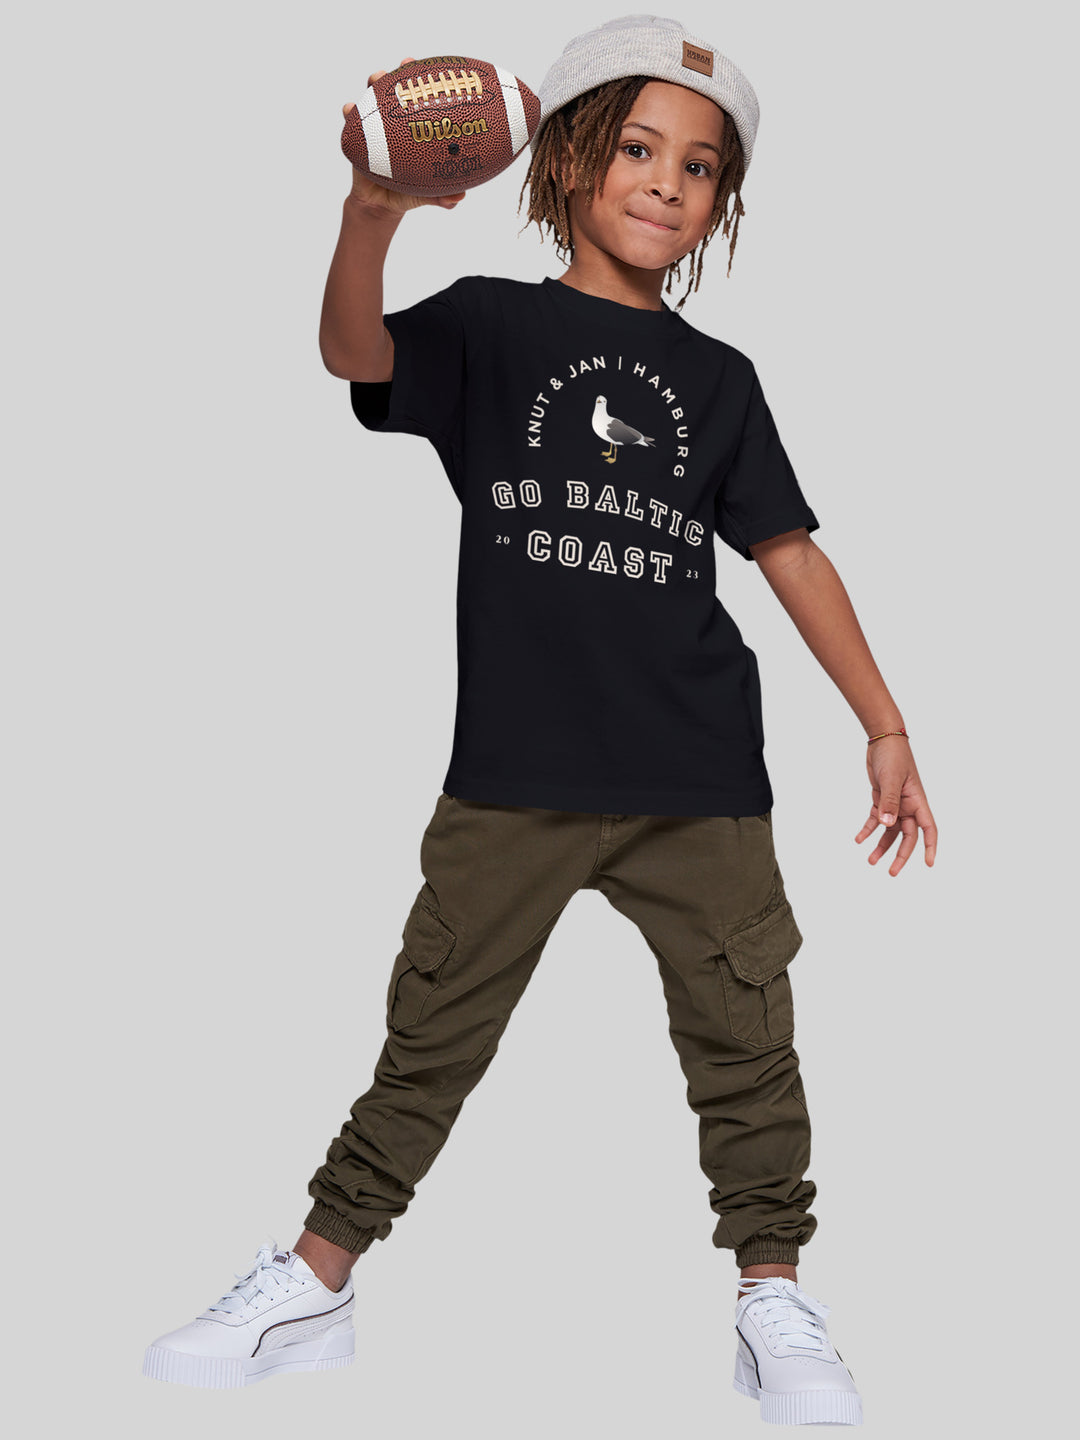 FINN | Kids T-Shirt Möwe